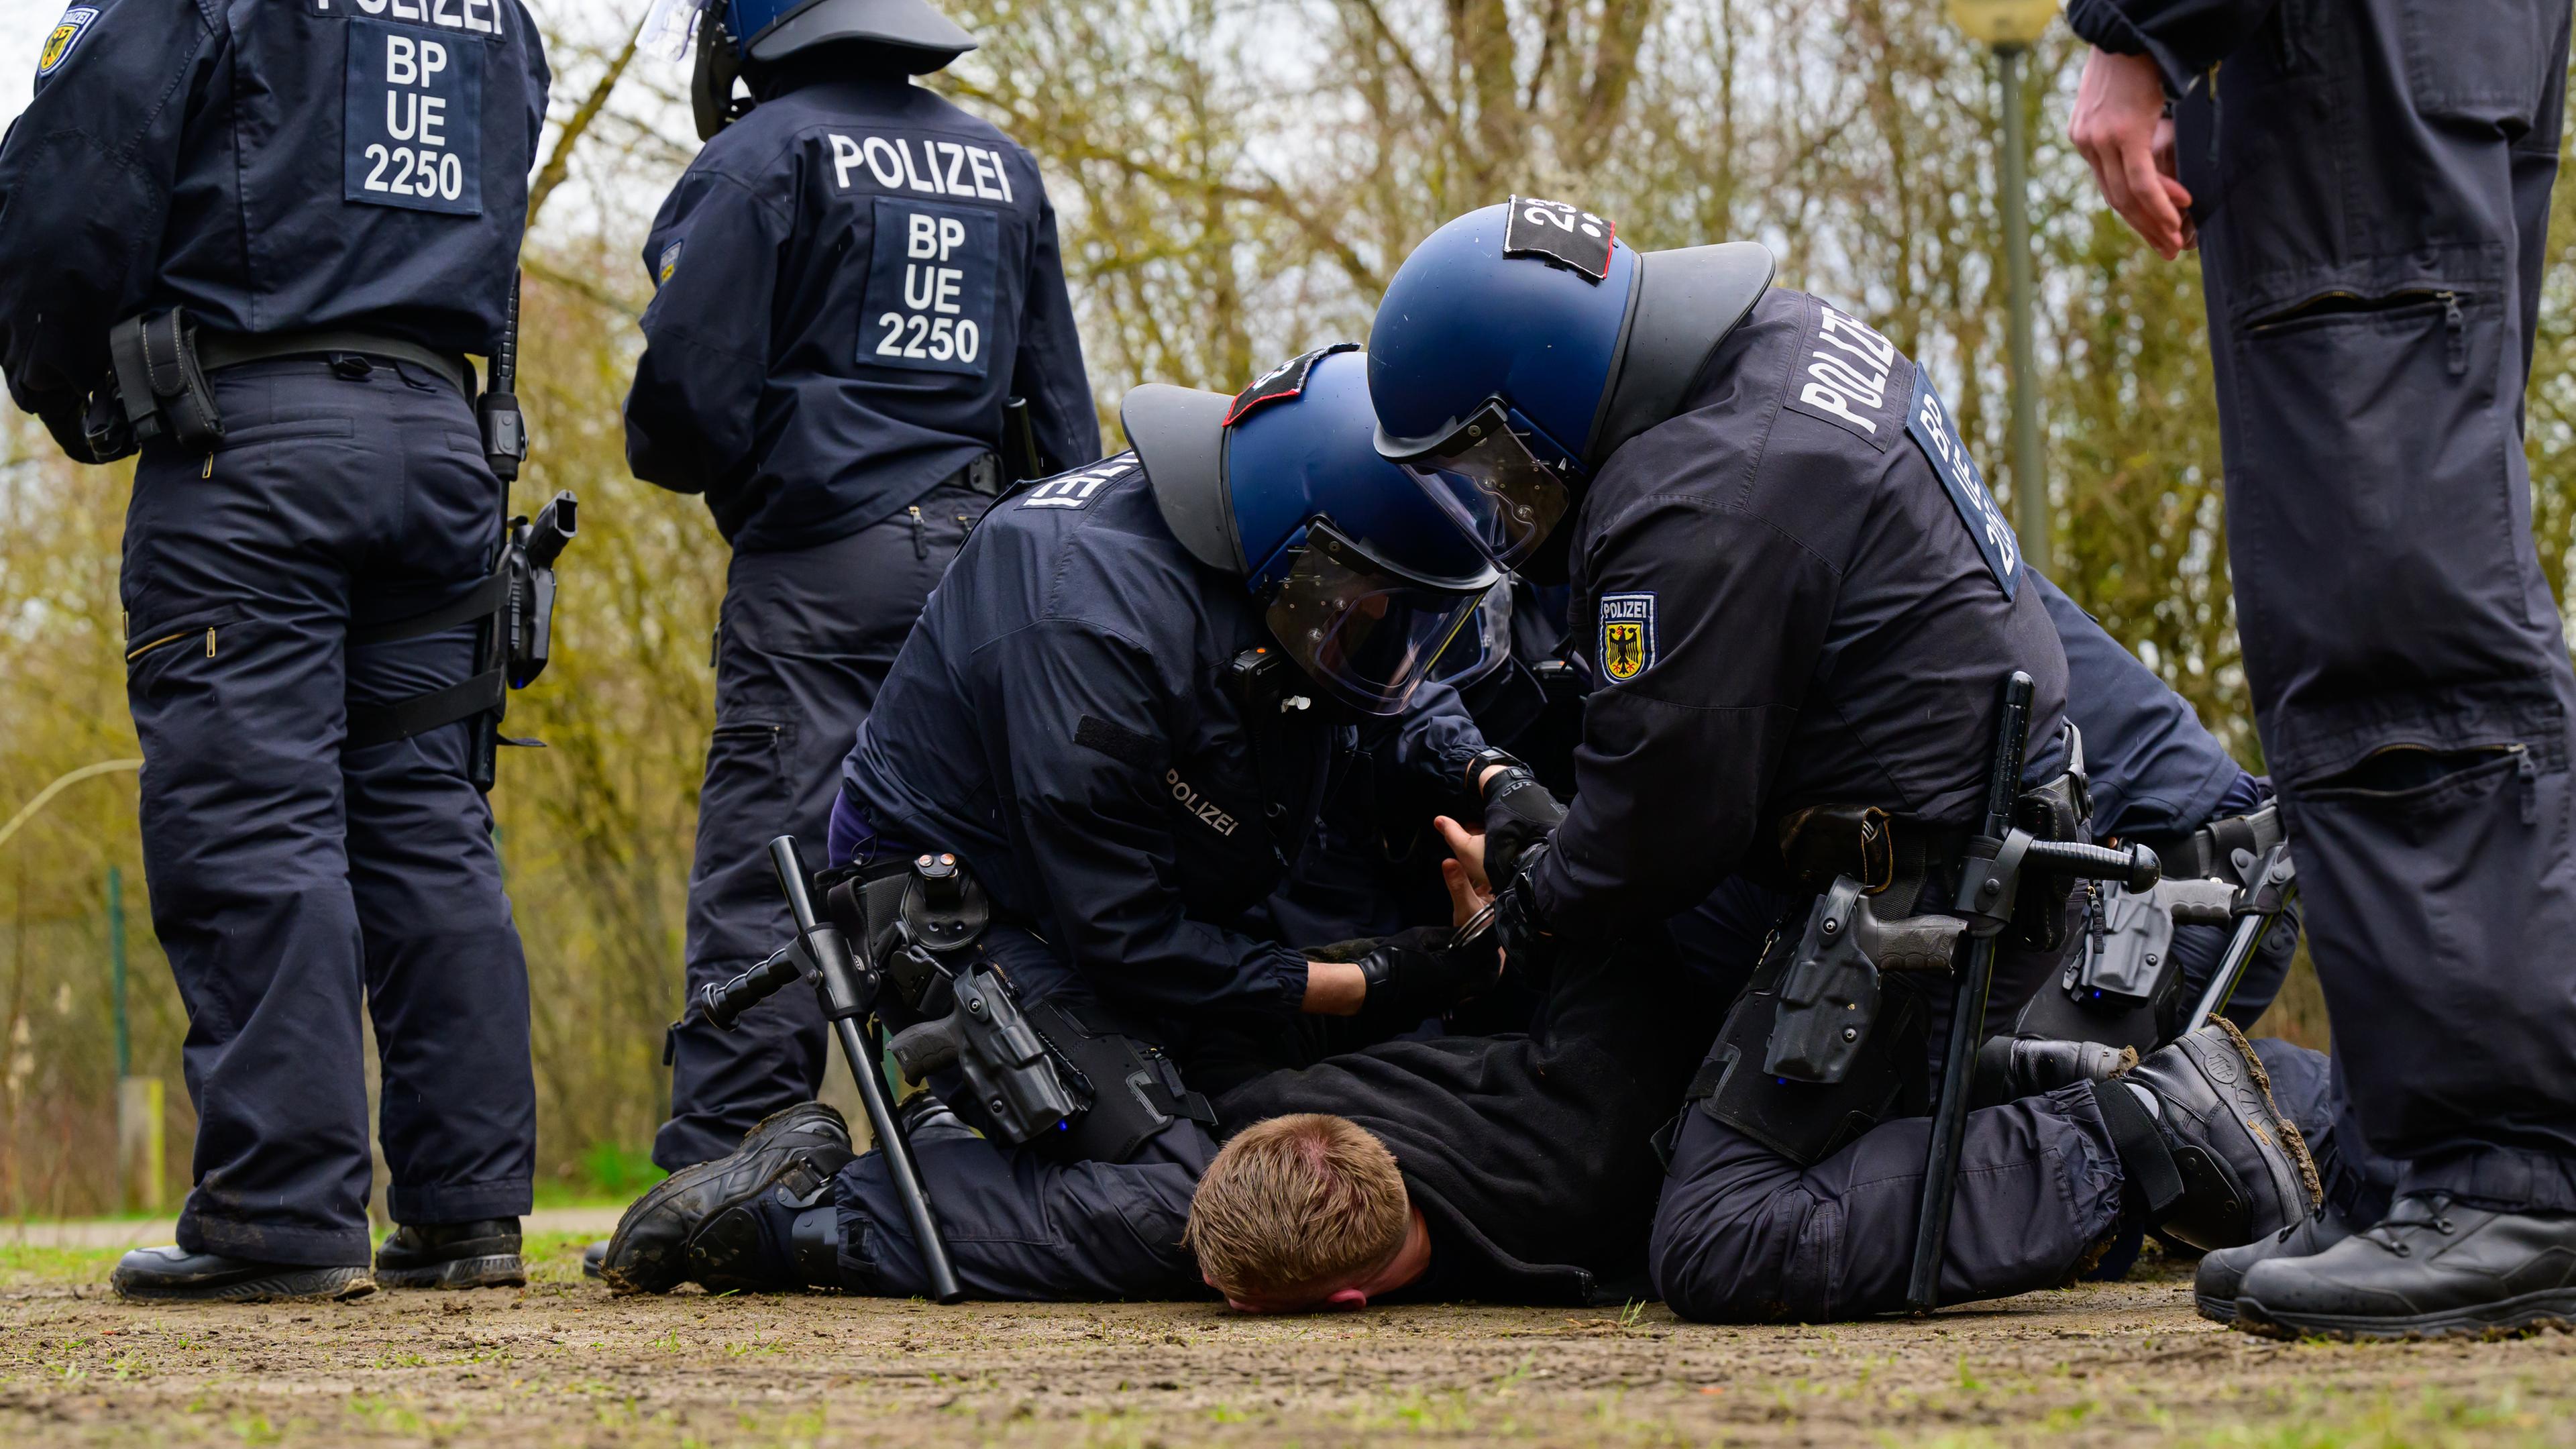 Polizisten der Bundespolizei nehmen während einer Übung einen Fußballfan fest.